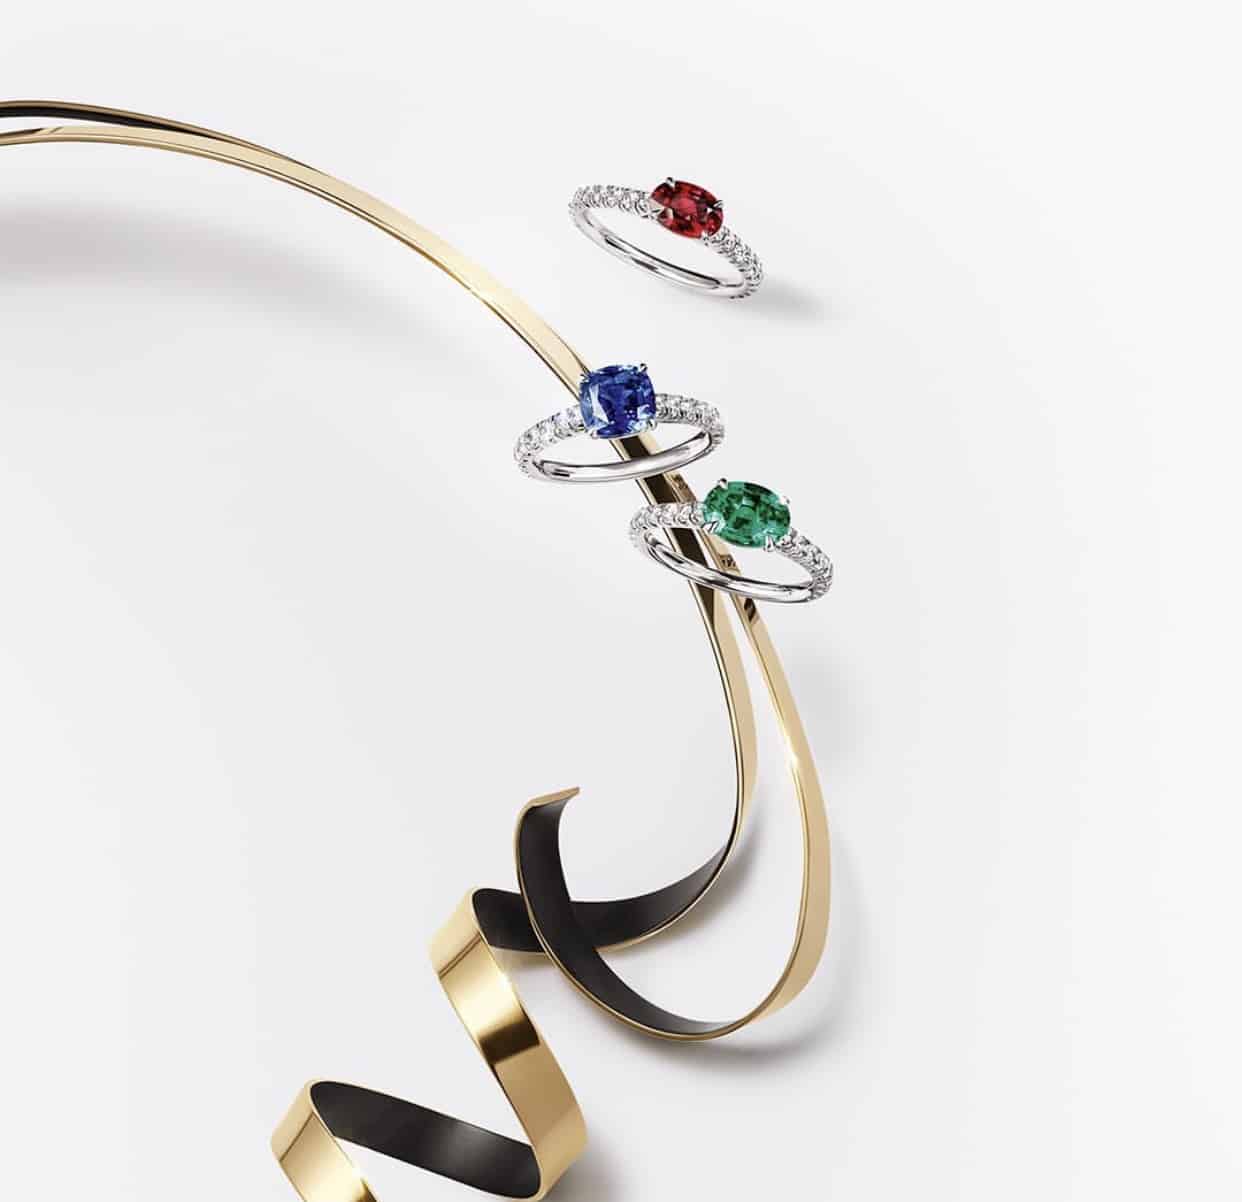 Nauja Cartier žiedų kolekcija – jūsų pasirinkimas pasimetus tarp pasirinkimų, ji yra klasikinė, elegantiška, nebrangi ir tuo pačiu atrodo prabangiai.